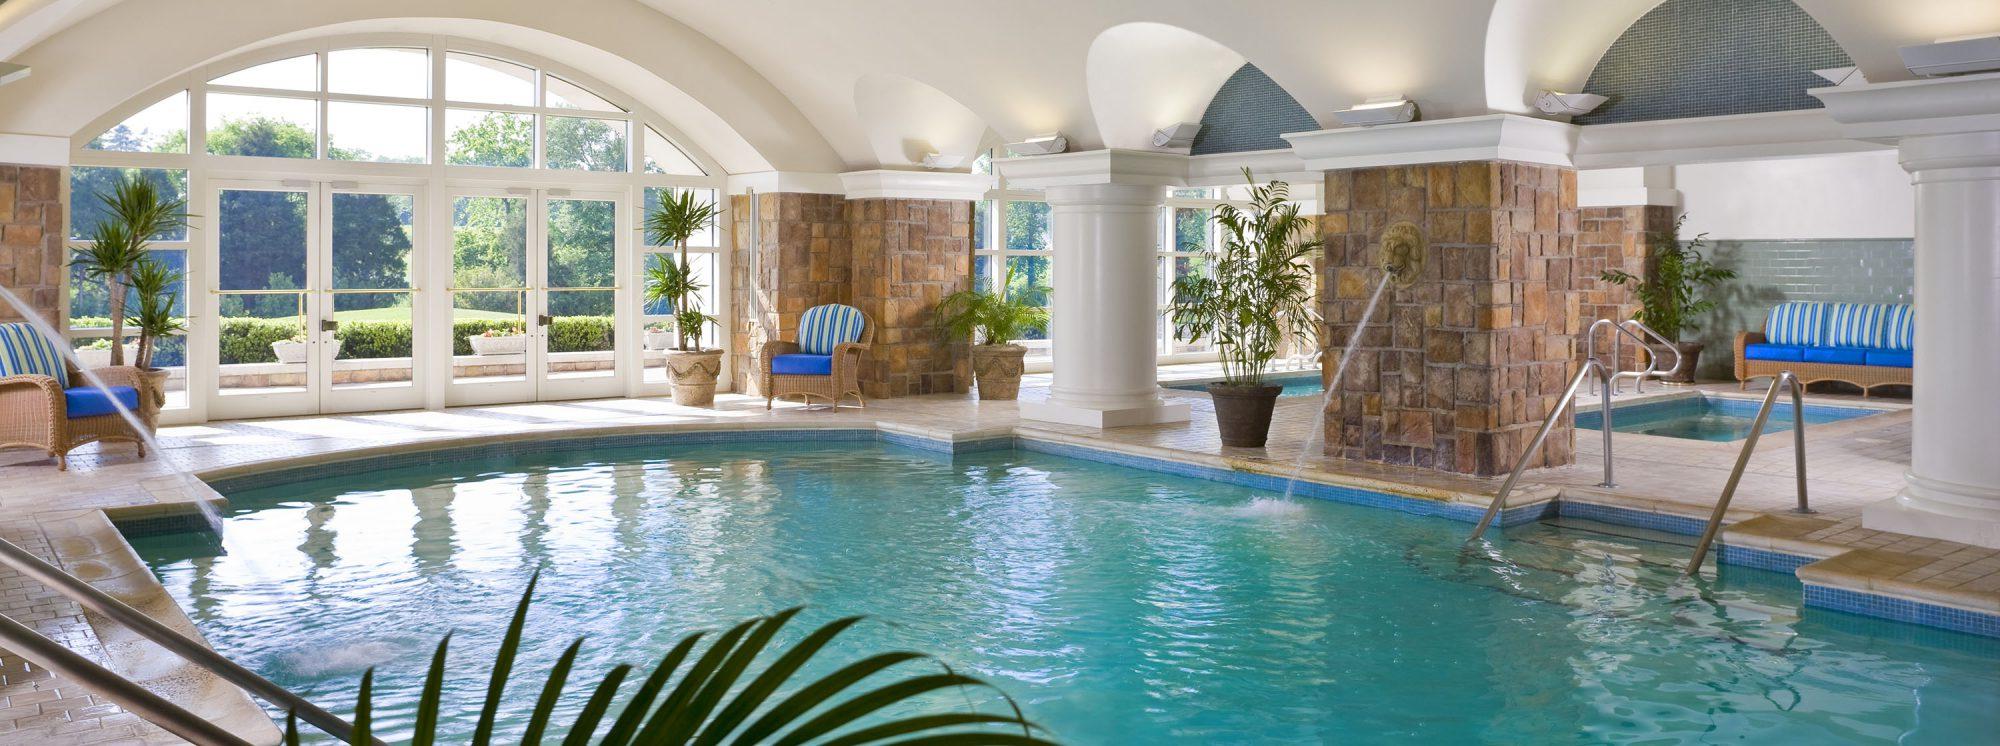 夏洛特Ballantyne酒店的室内游泳池